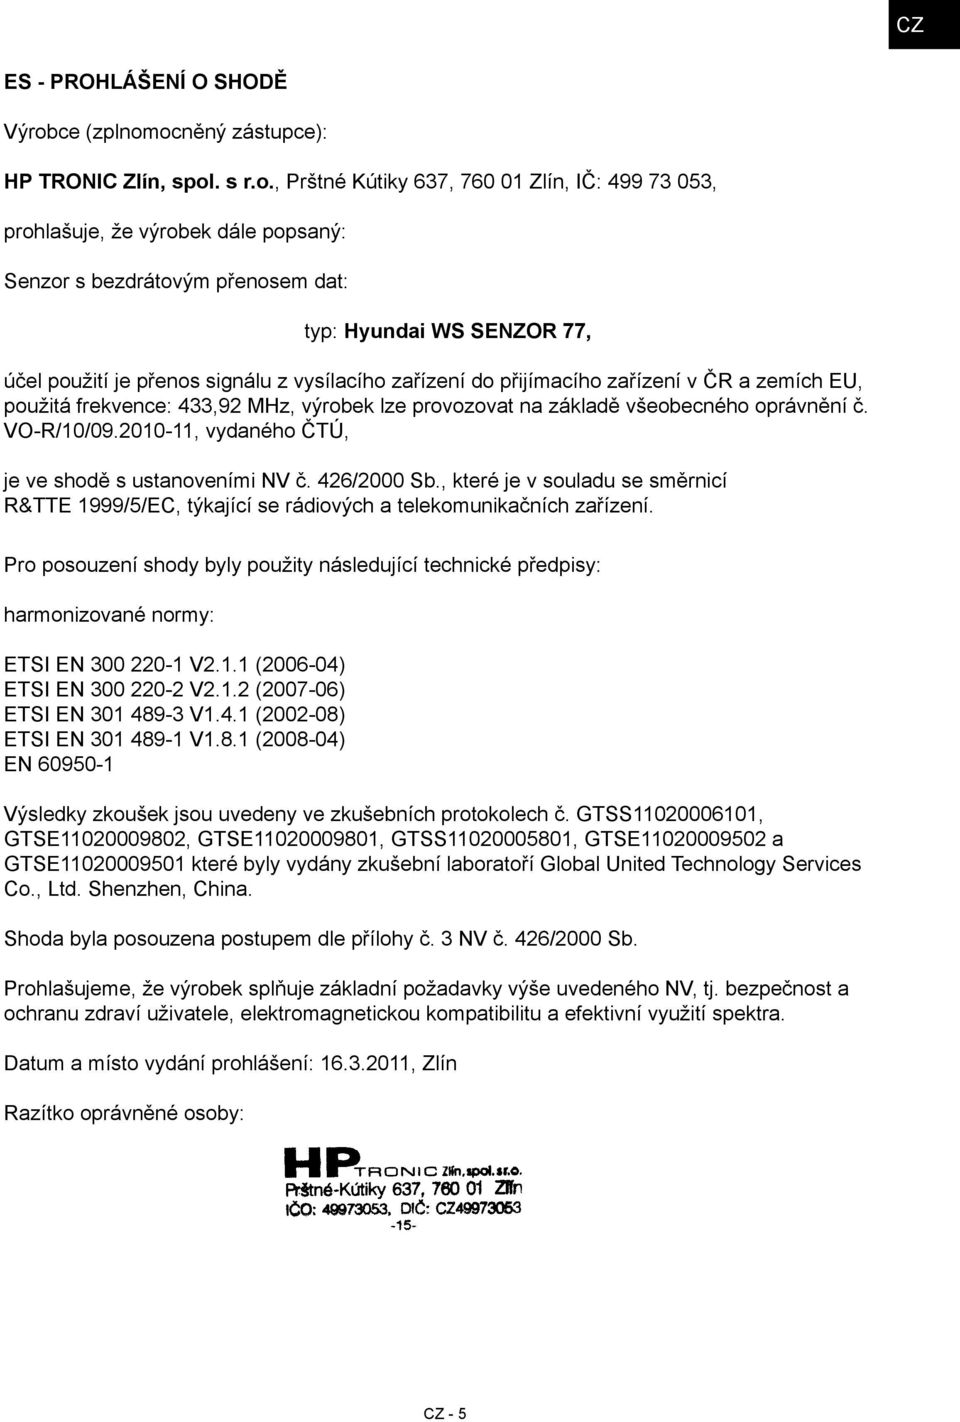 ocněný zástupce): HP TRONIC Zlín, spol. s r.o., Prštné Kútiky 637, 760 01 Zlín, IČ: 499 73 053, prohlašuje, že výrobek dále popsaný: Senzor s bezdrátovým přenosem dat: typ: Hyundai WS SENZOR 77, účel